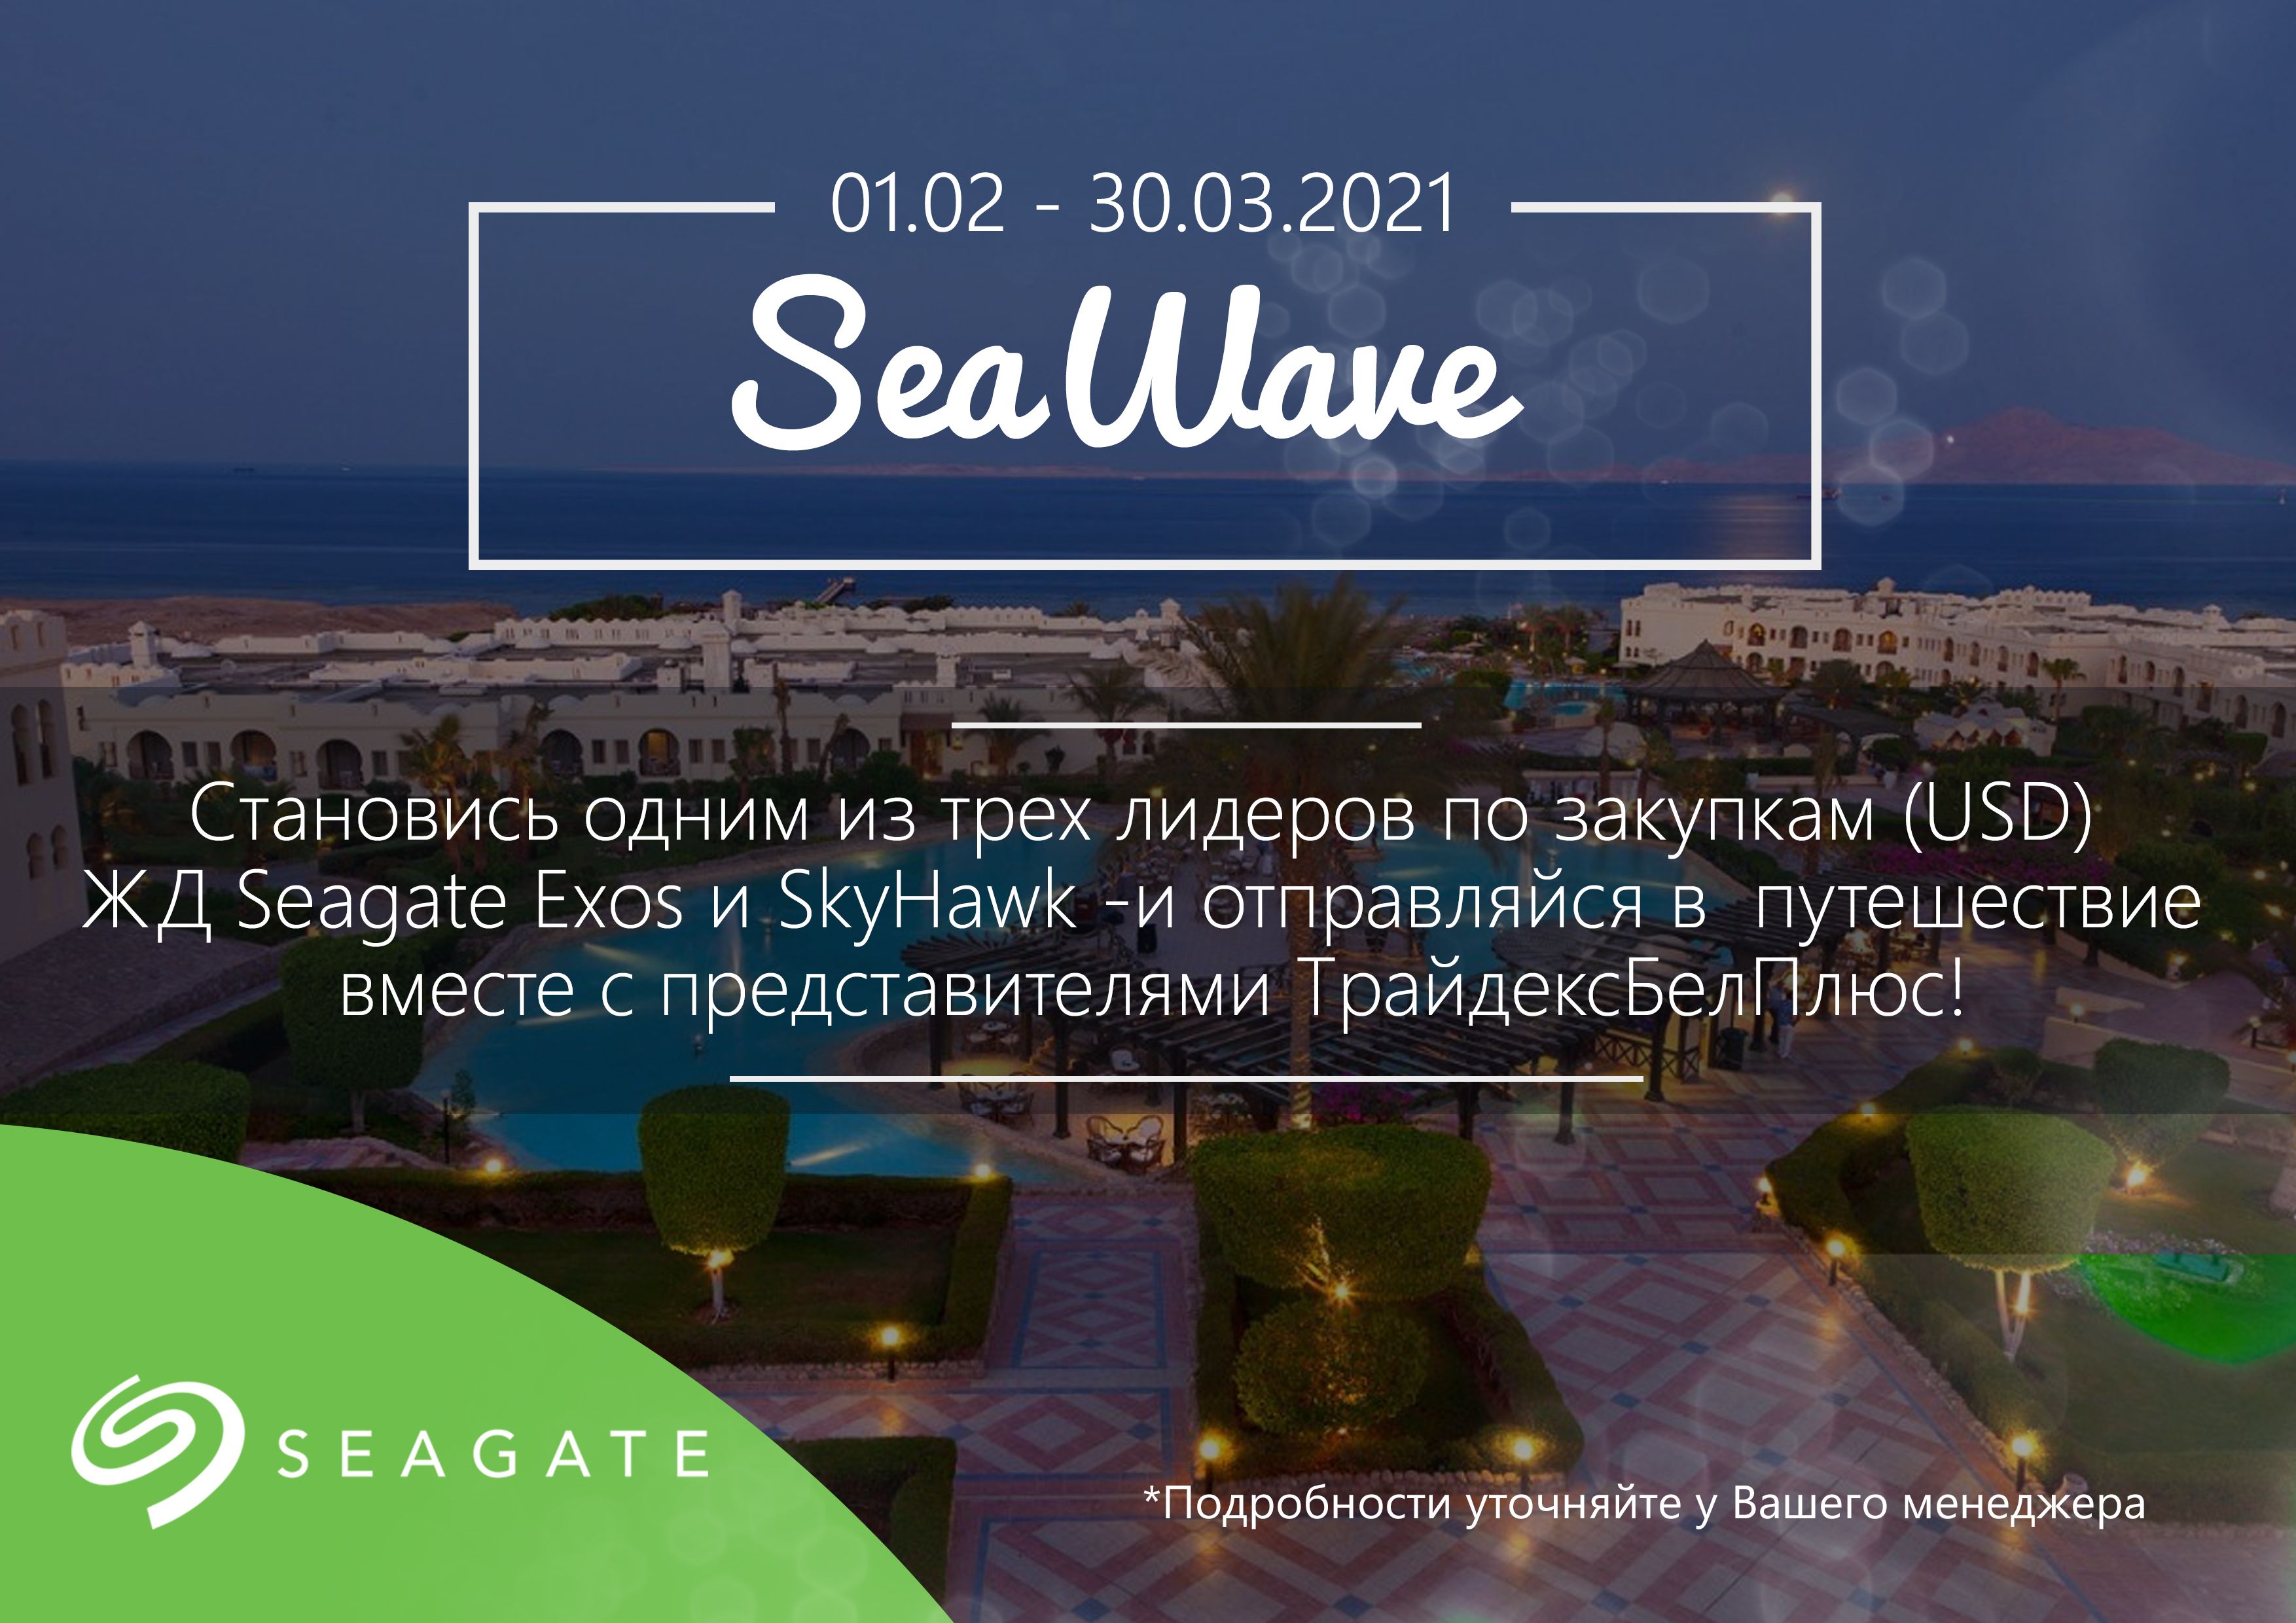 Seawave: победители отправятся в путешествие!